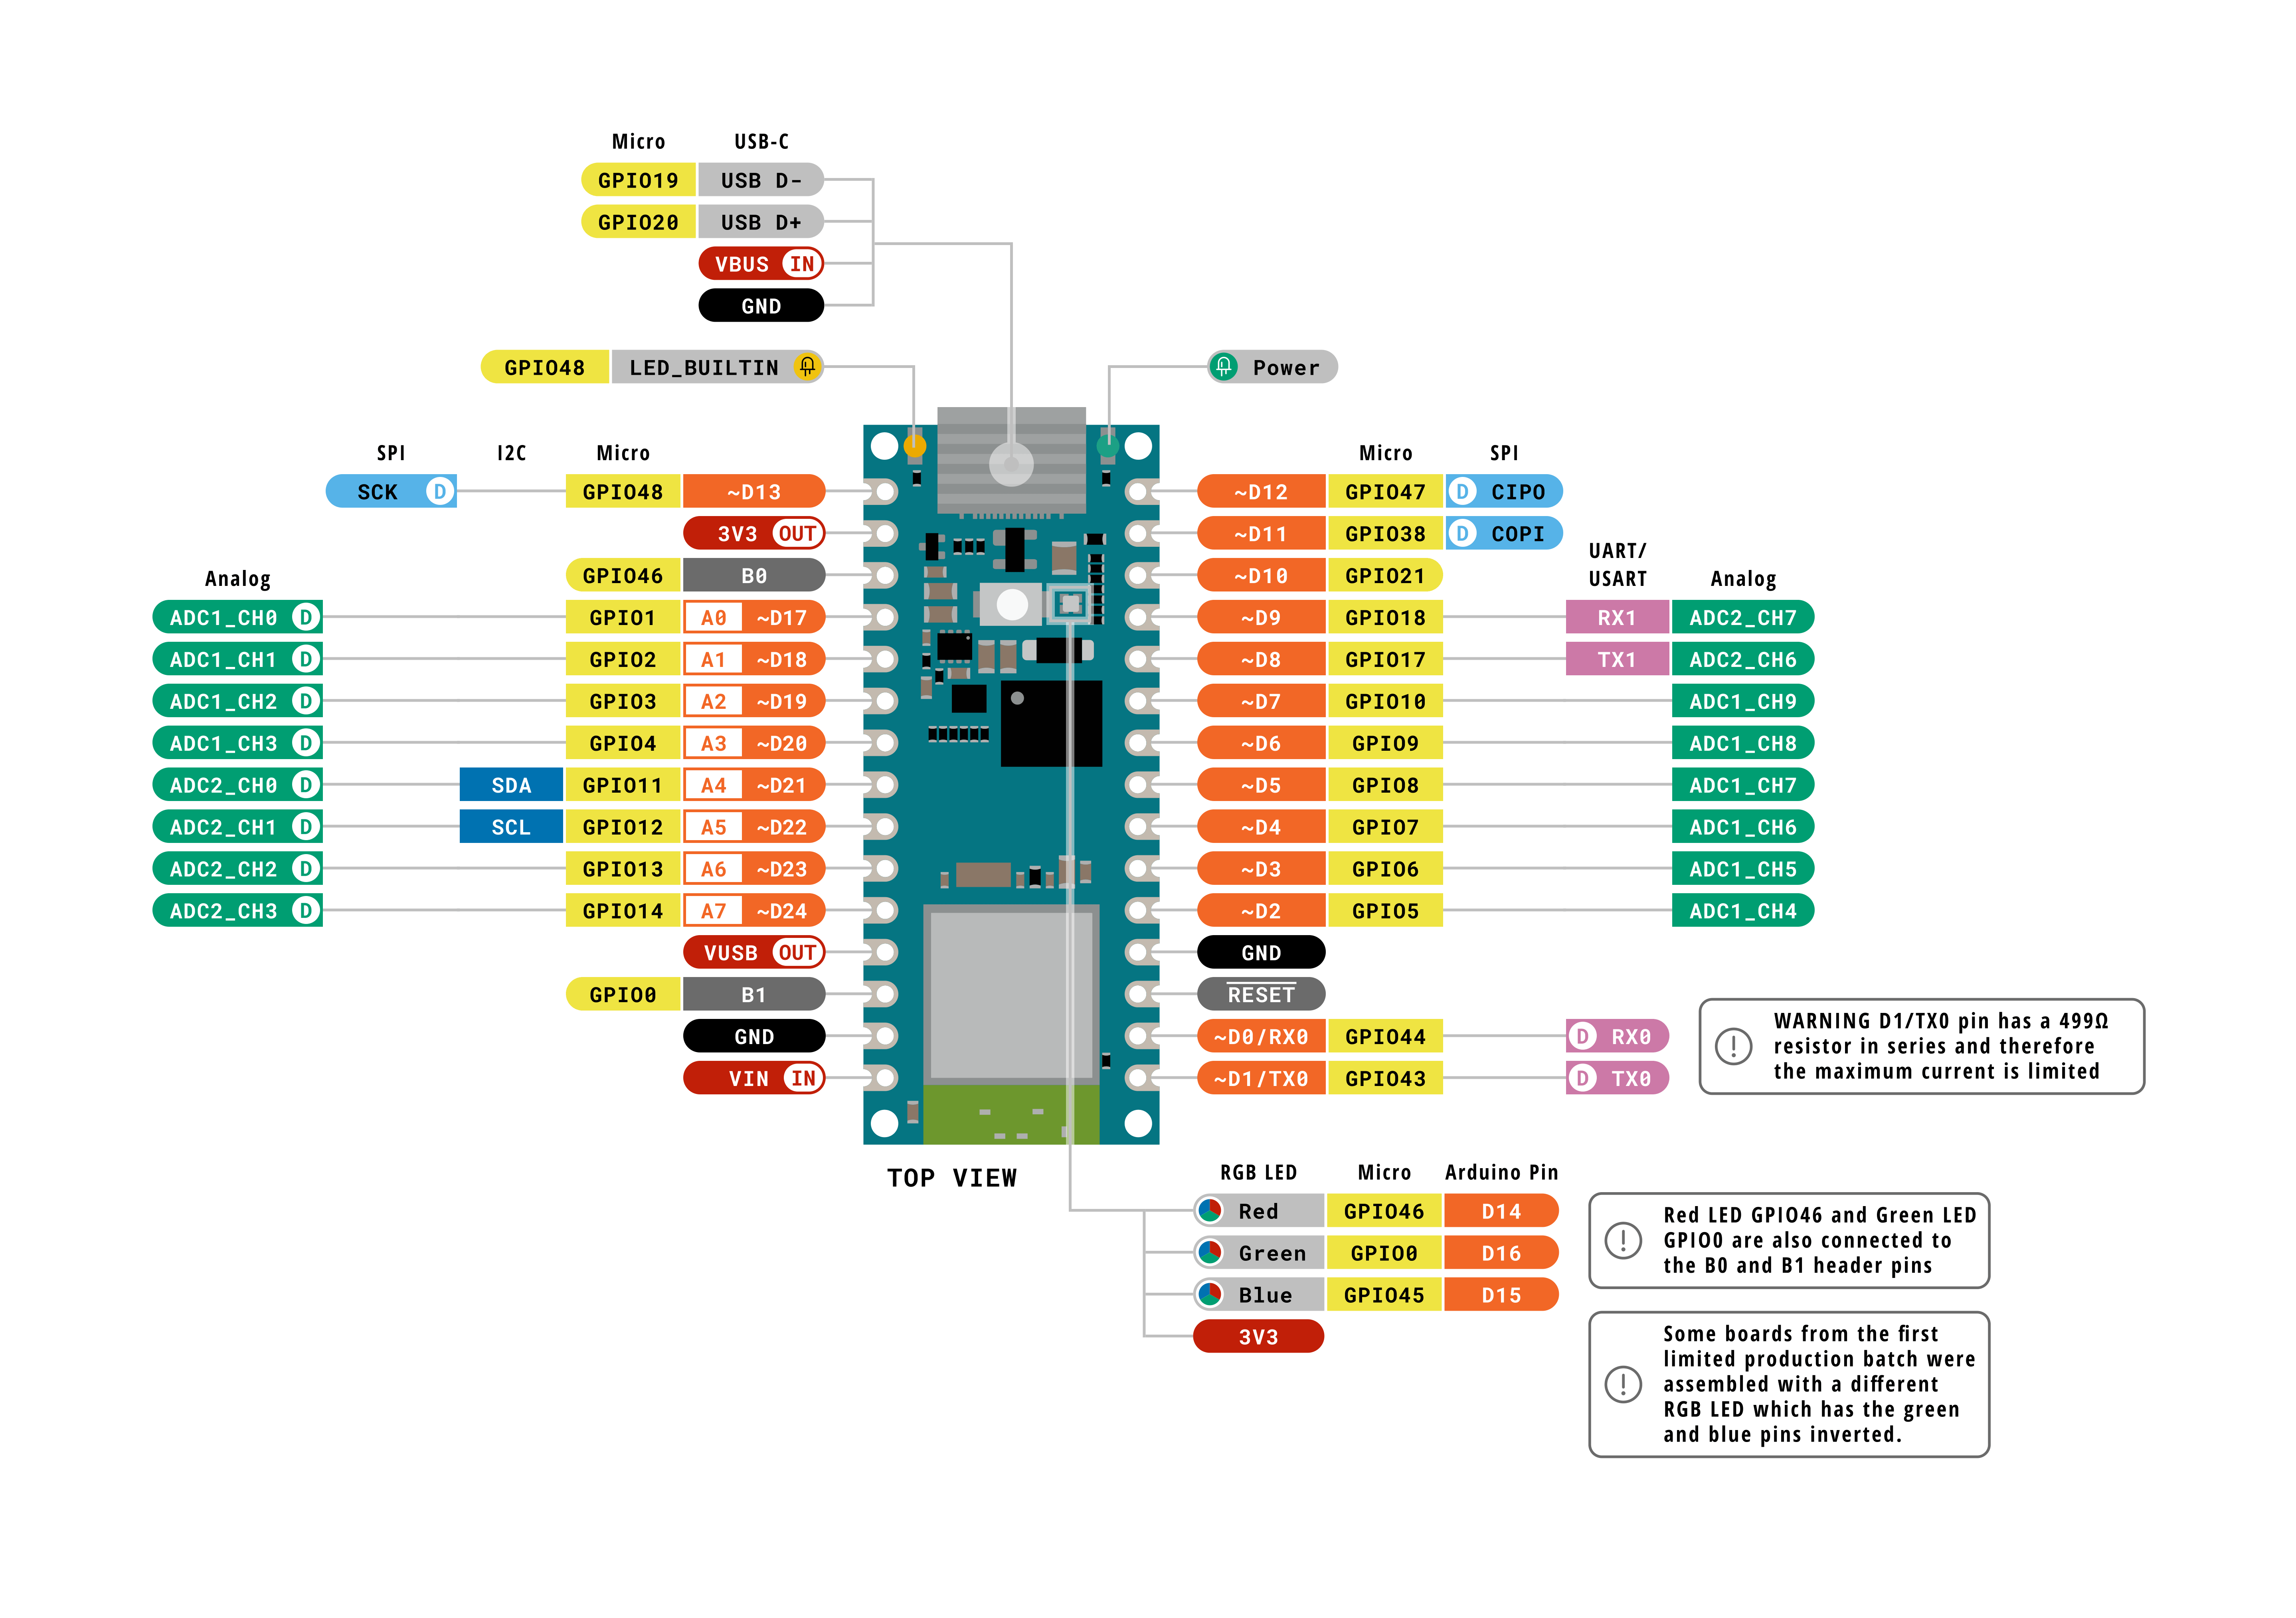 Arduino® Nano ESP32